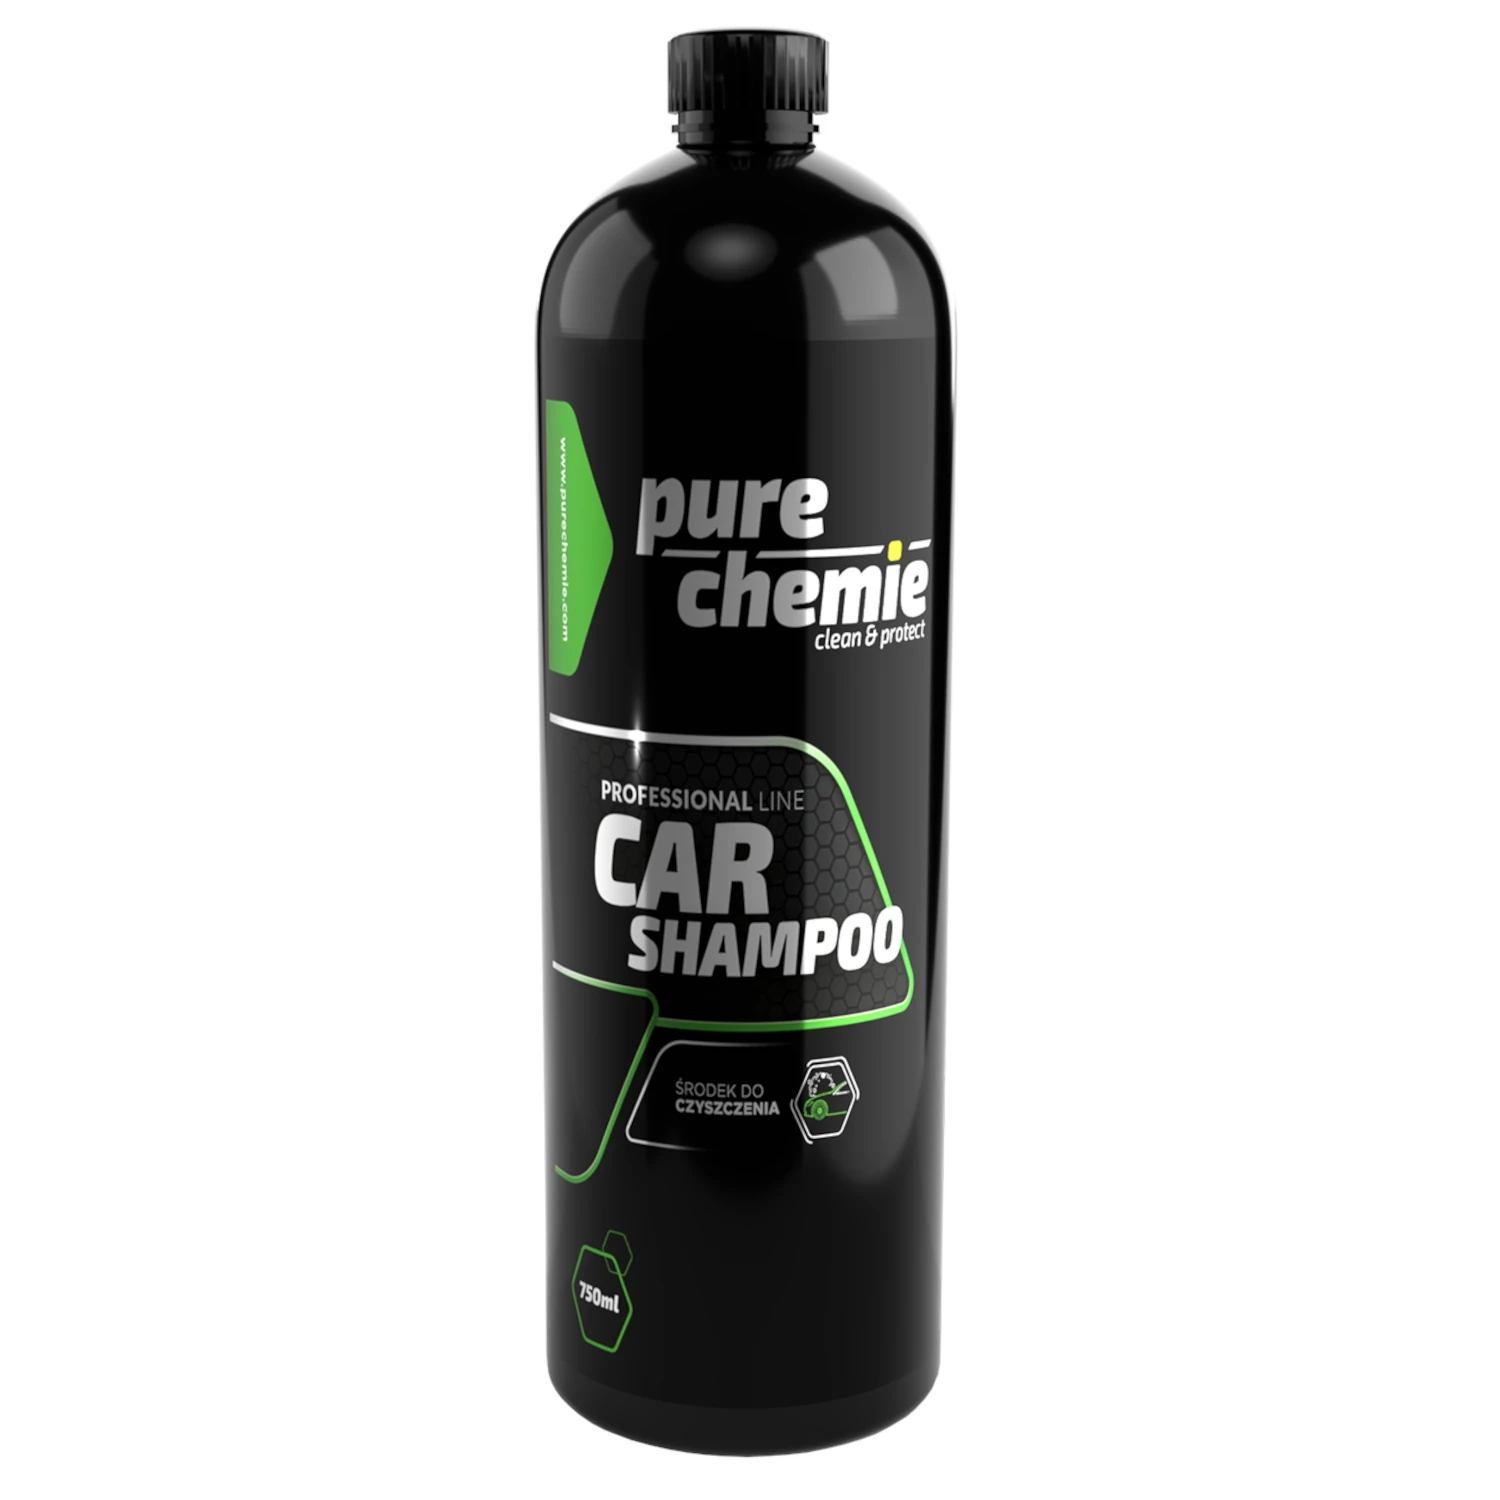 Image of Pure Chemie Car Shampoo – delikatny szampon samochodowy, kwaśne pH 750ml